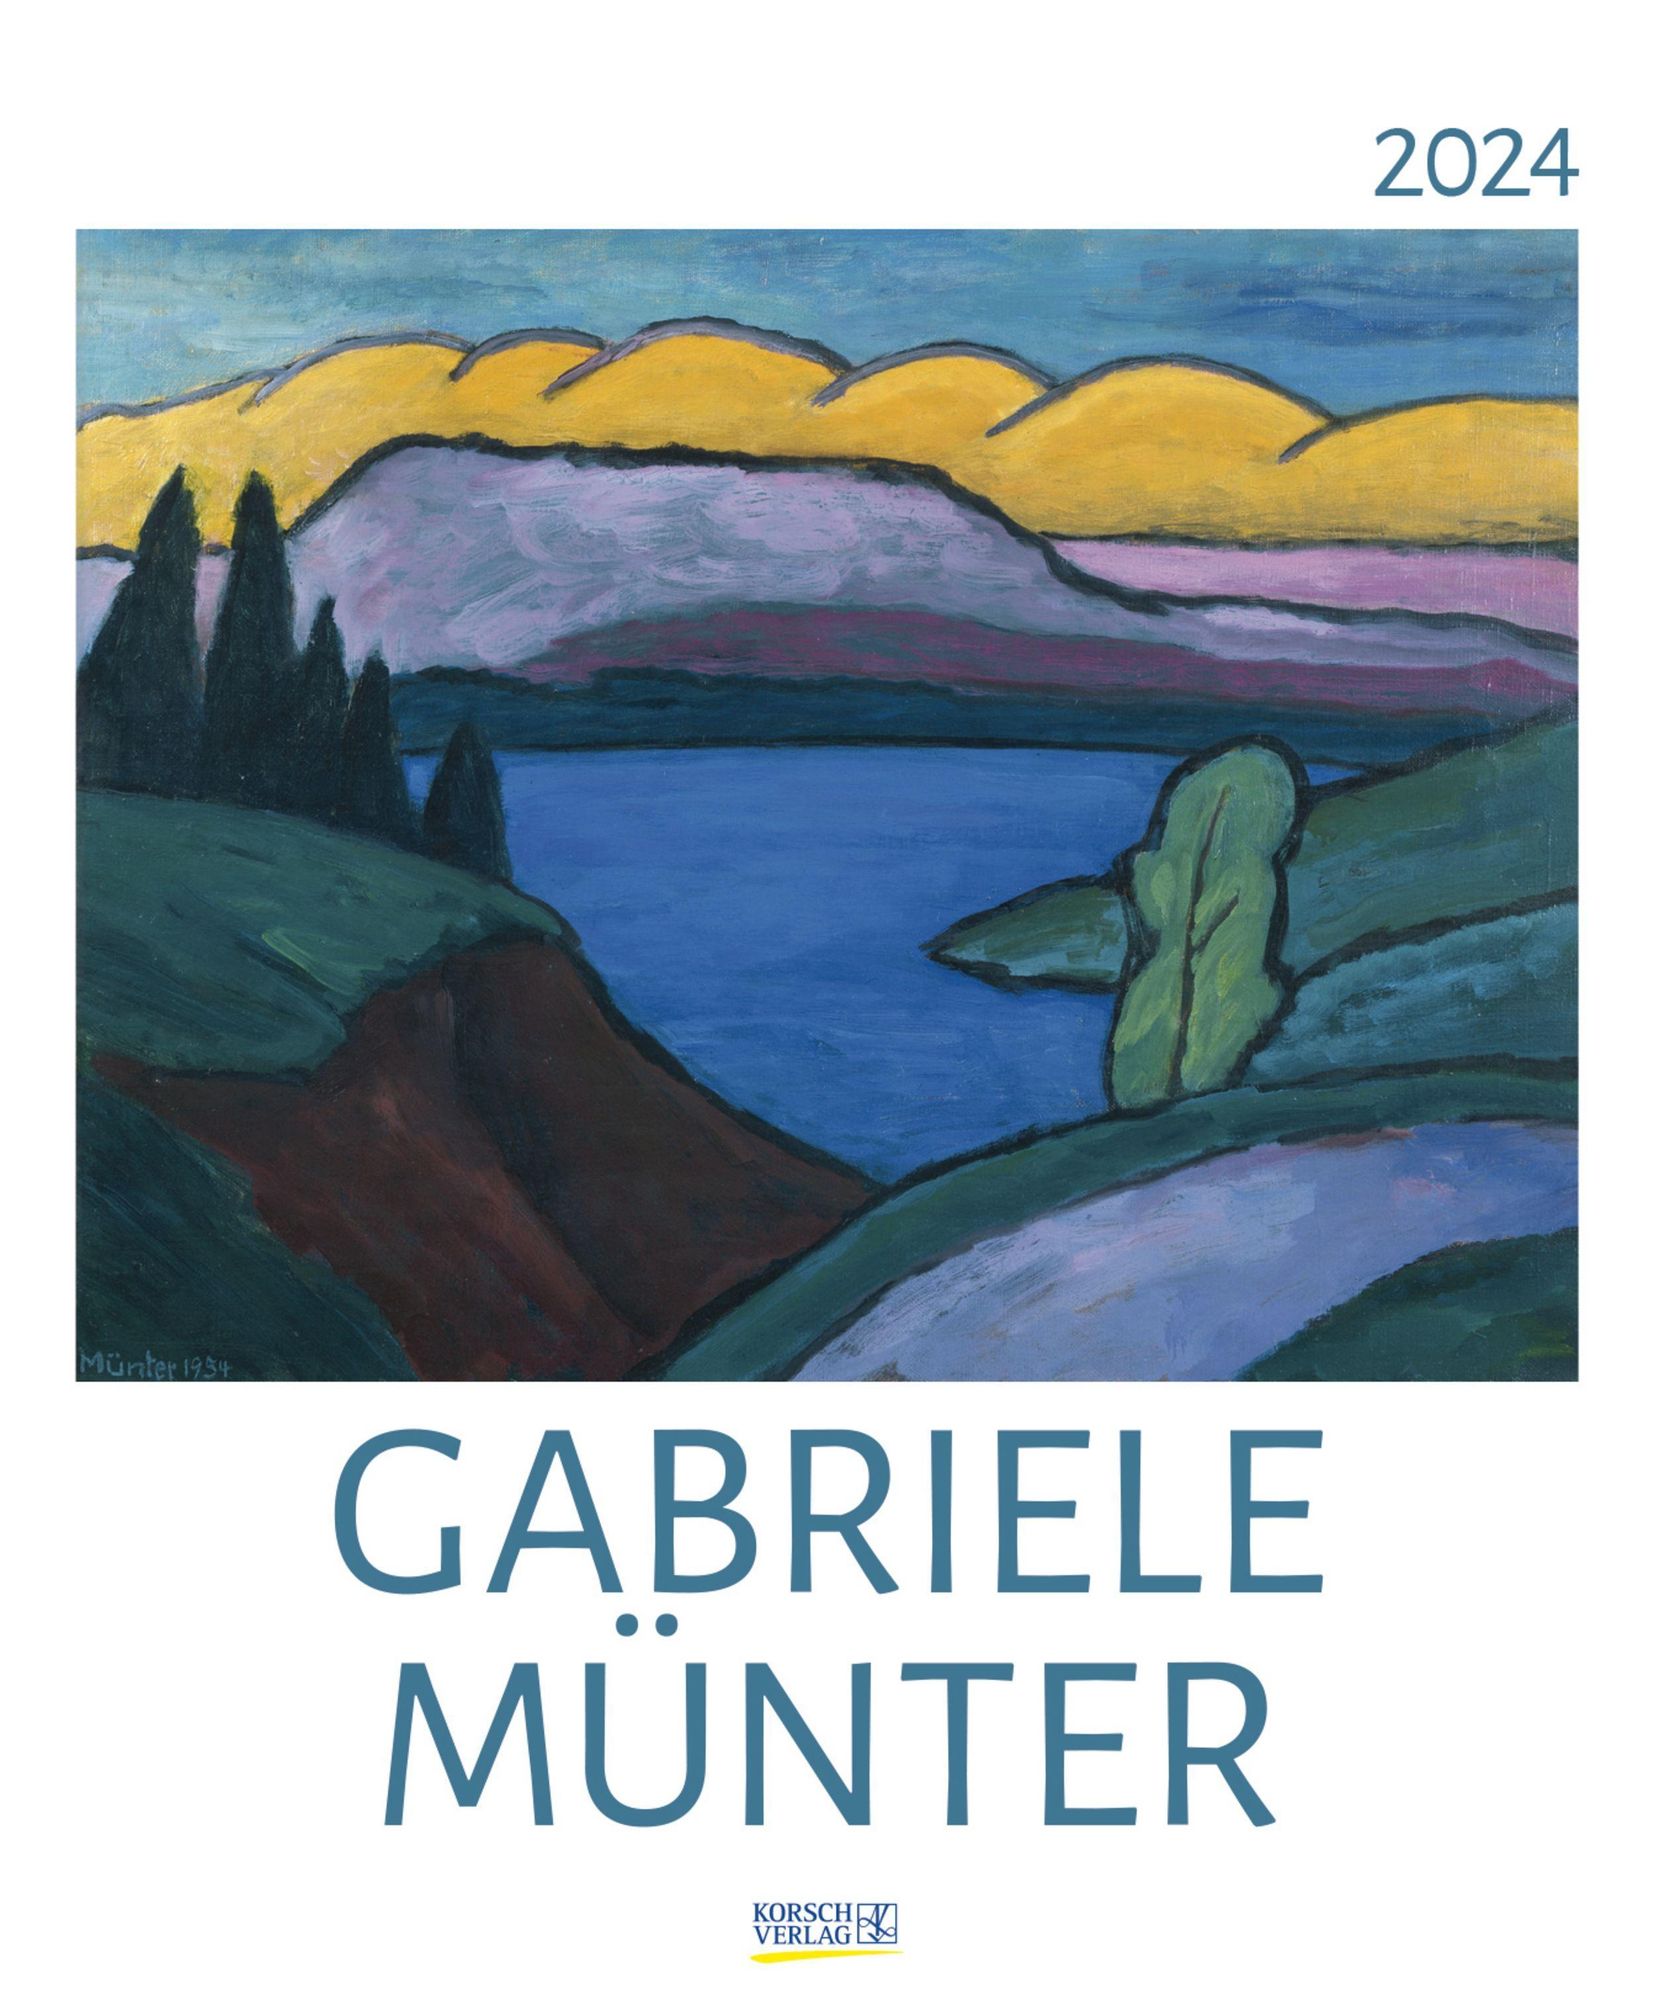 Gabriele Münter - 'Korsch '